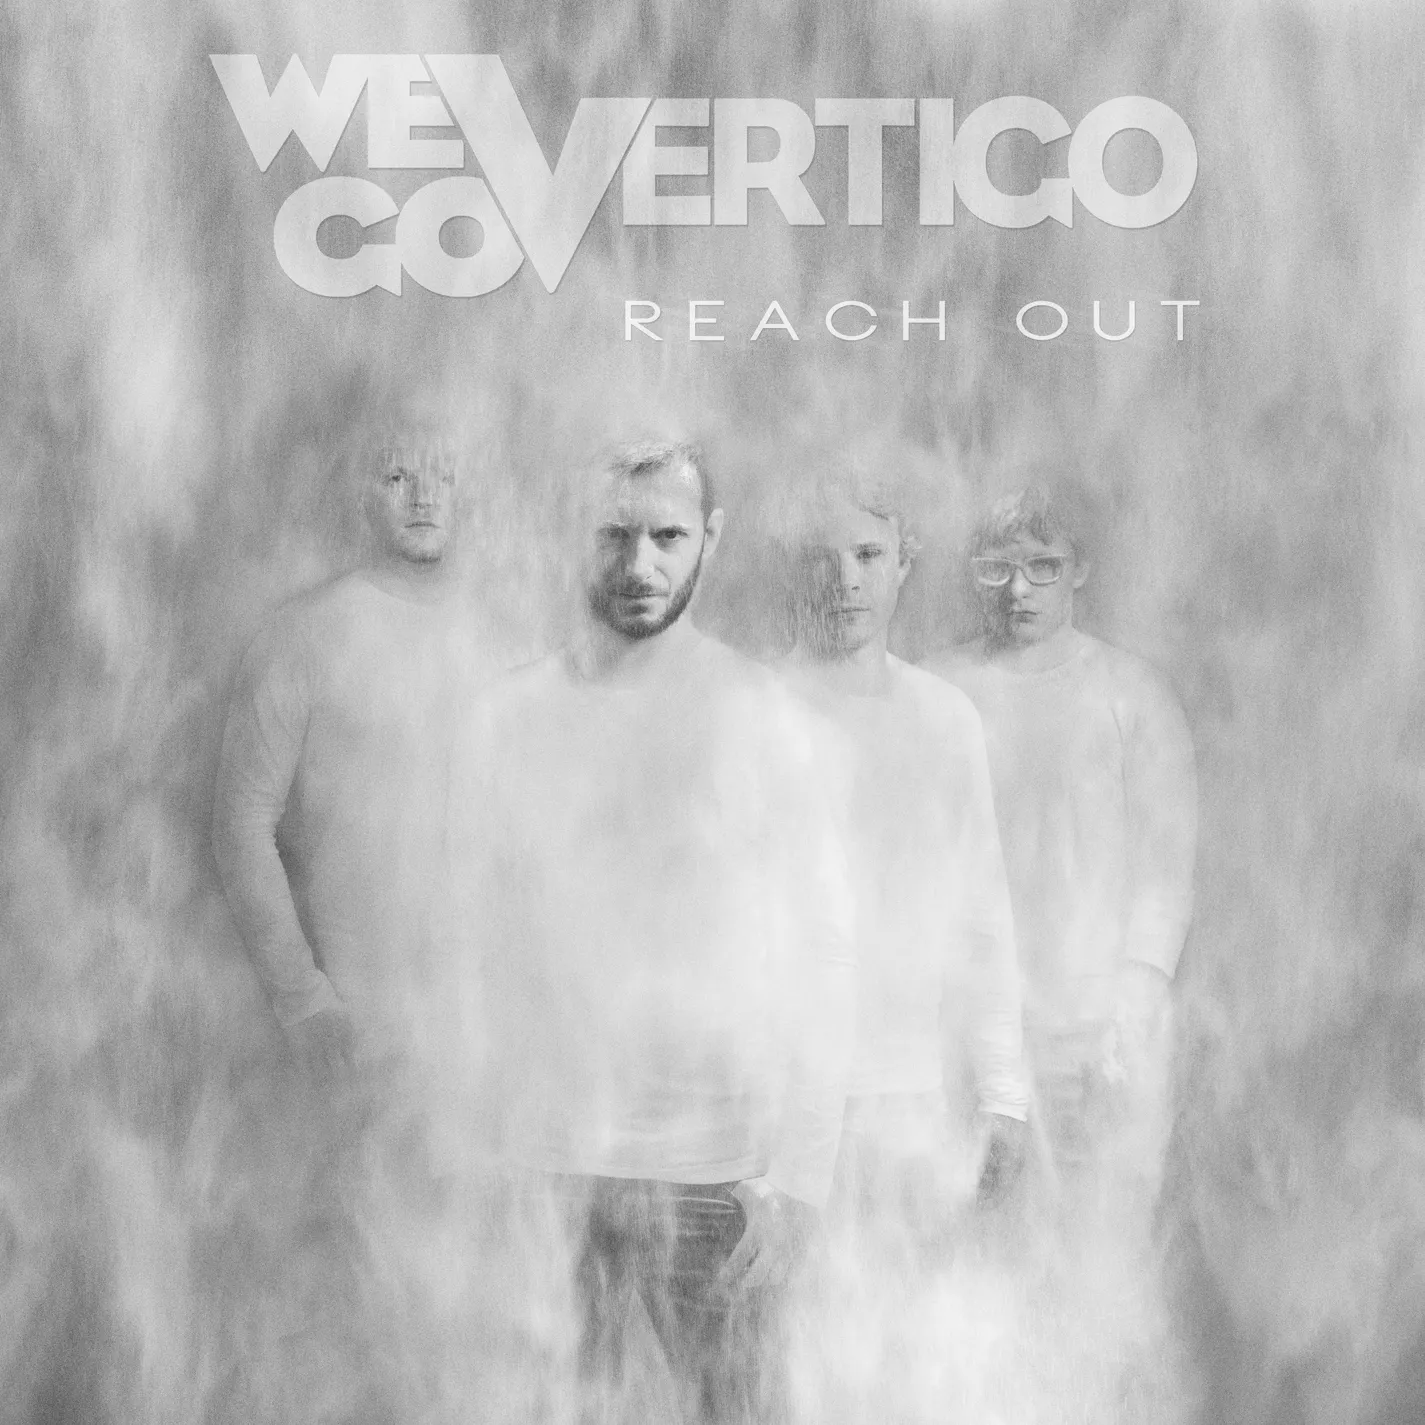 Reach Out - We Go Vertigo